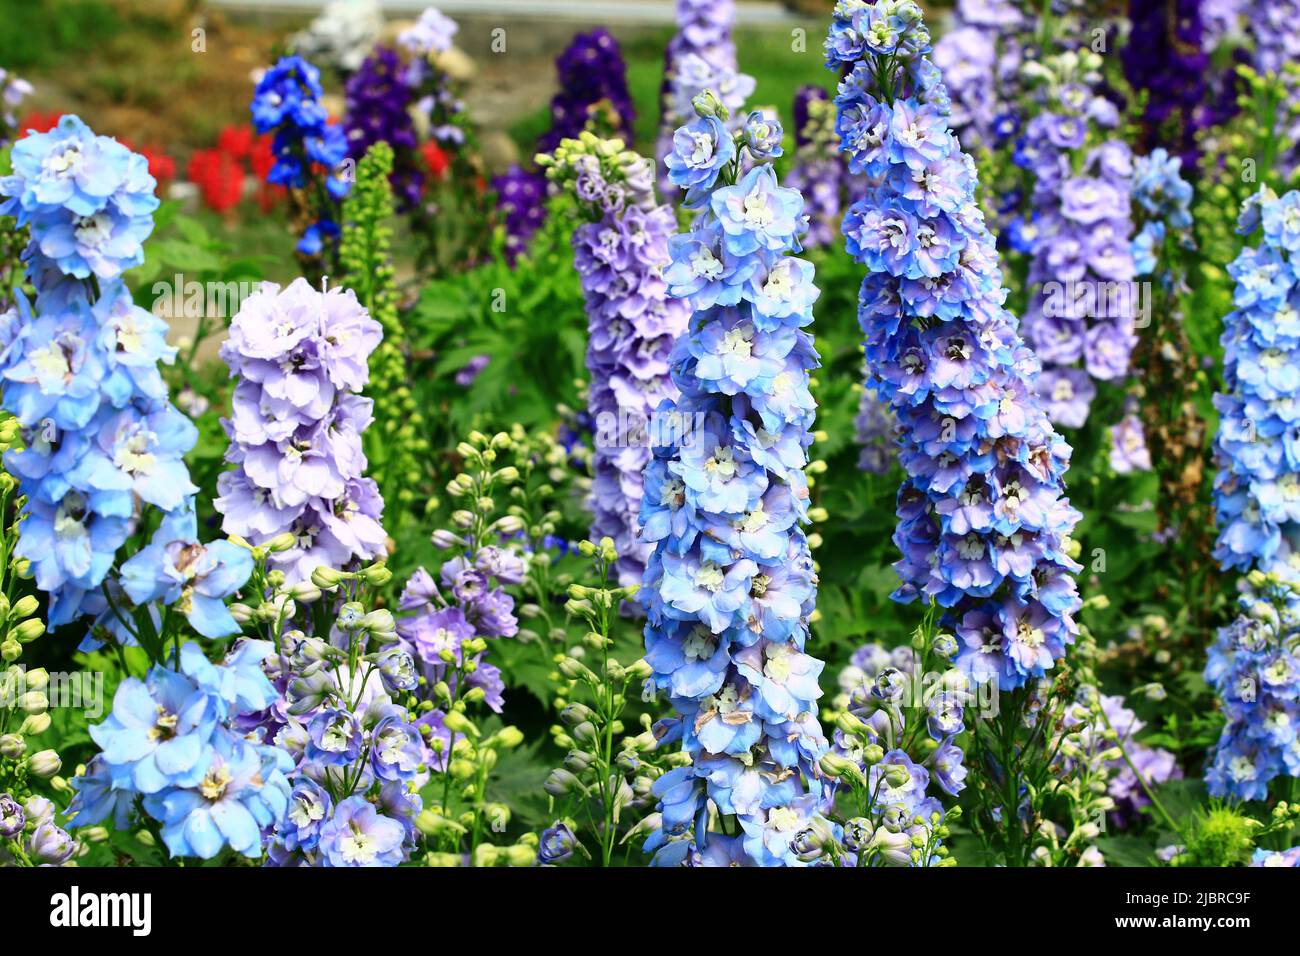 Fiore Delphinium(Candle Delphinium,Inglese Larkspur,Tall Larkspur) fiori, primo piano di blu e viola Delphinium fiori in fiore nel giardino Foto Stock